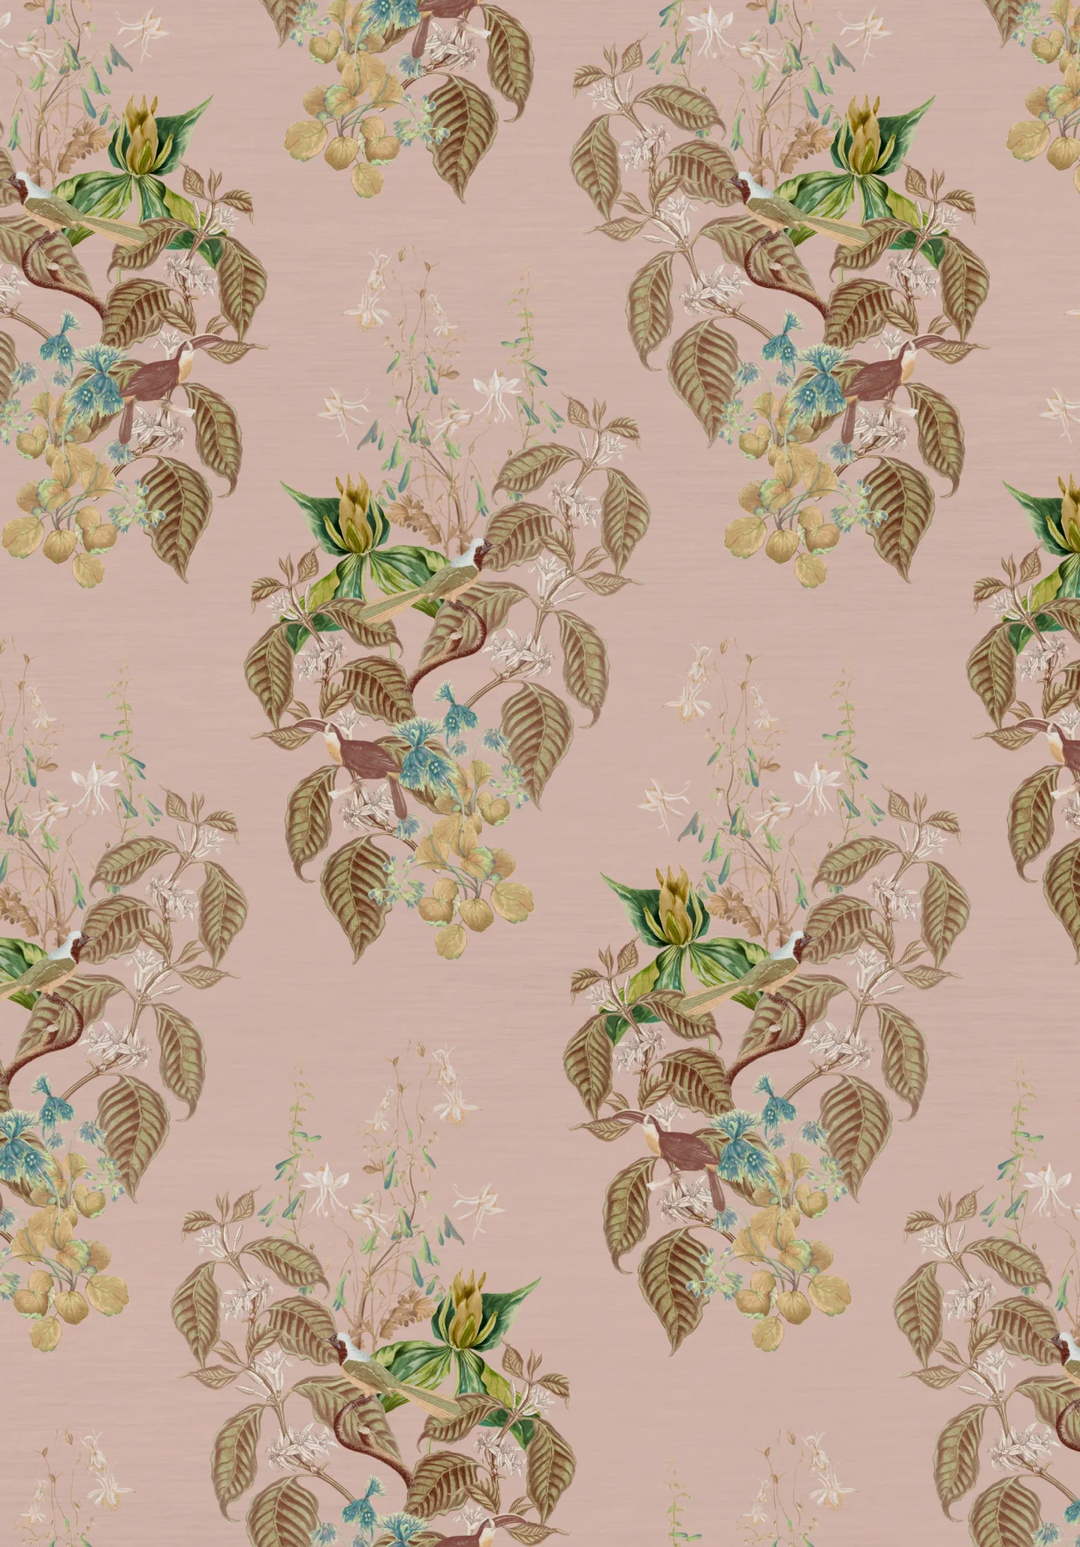 Deus-ex-Gardenia-wallpaper-Cinder-Rose-French-Toile-design-leaves-birds-subtle-woven-background-jasmine-leaves-Cinder-rose-Pink